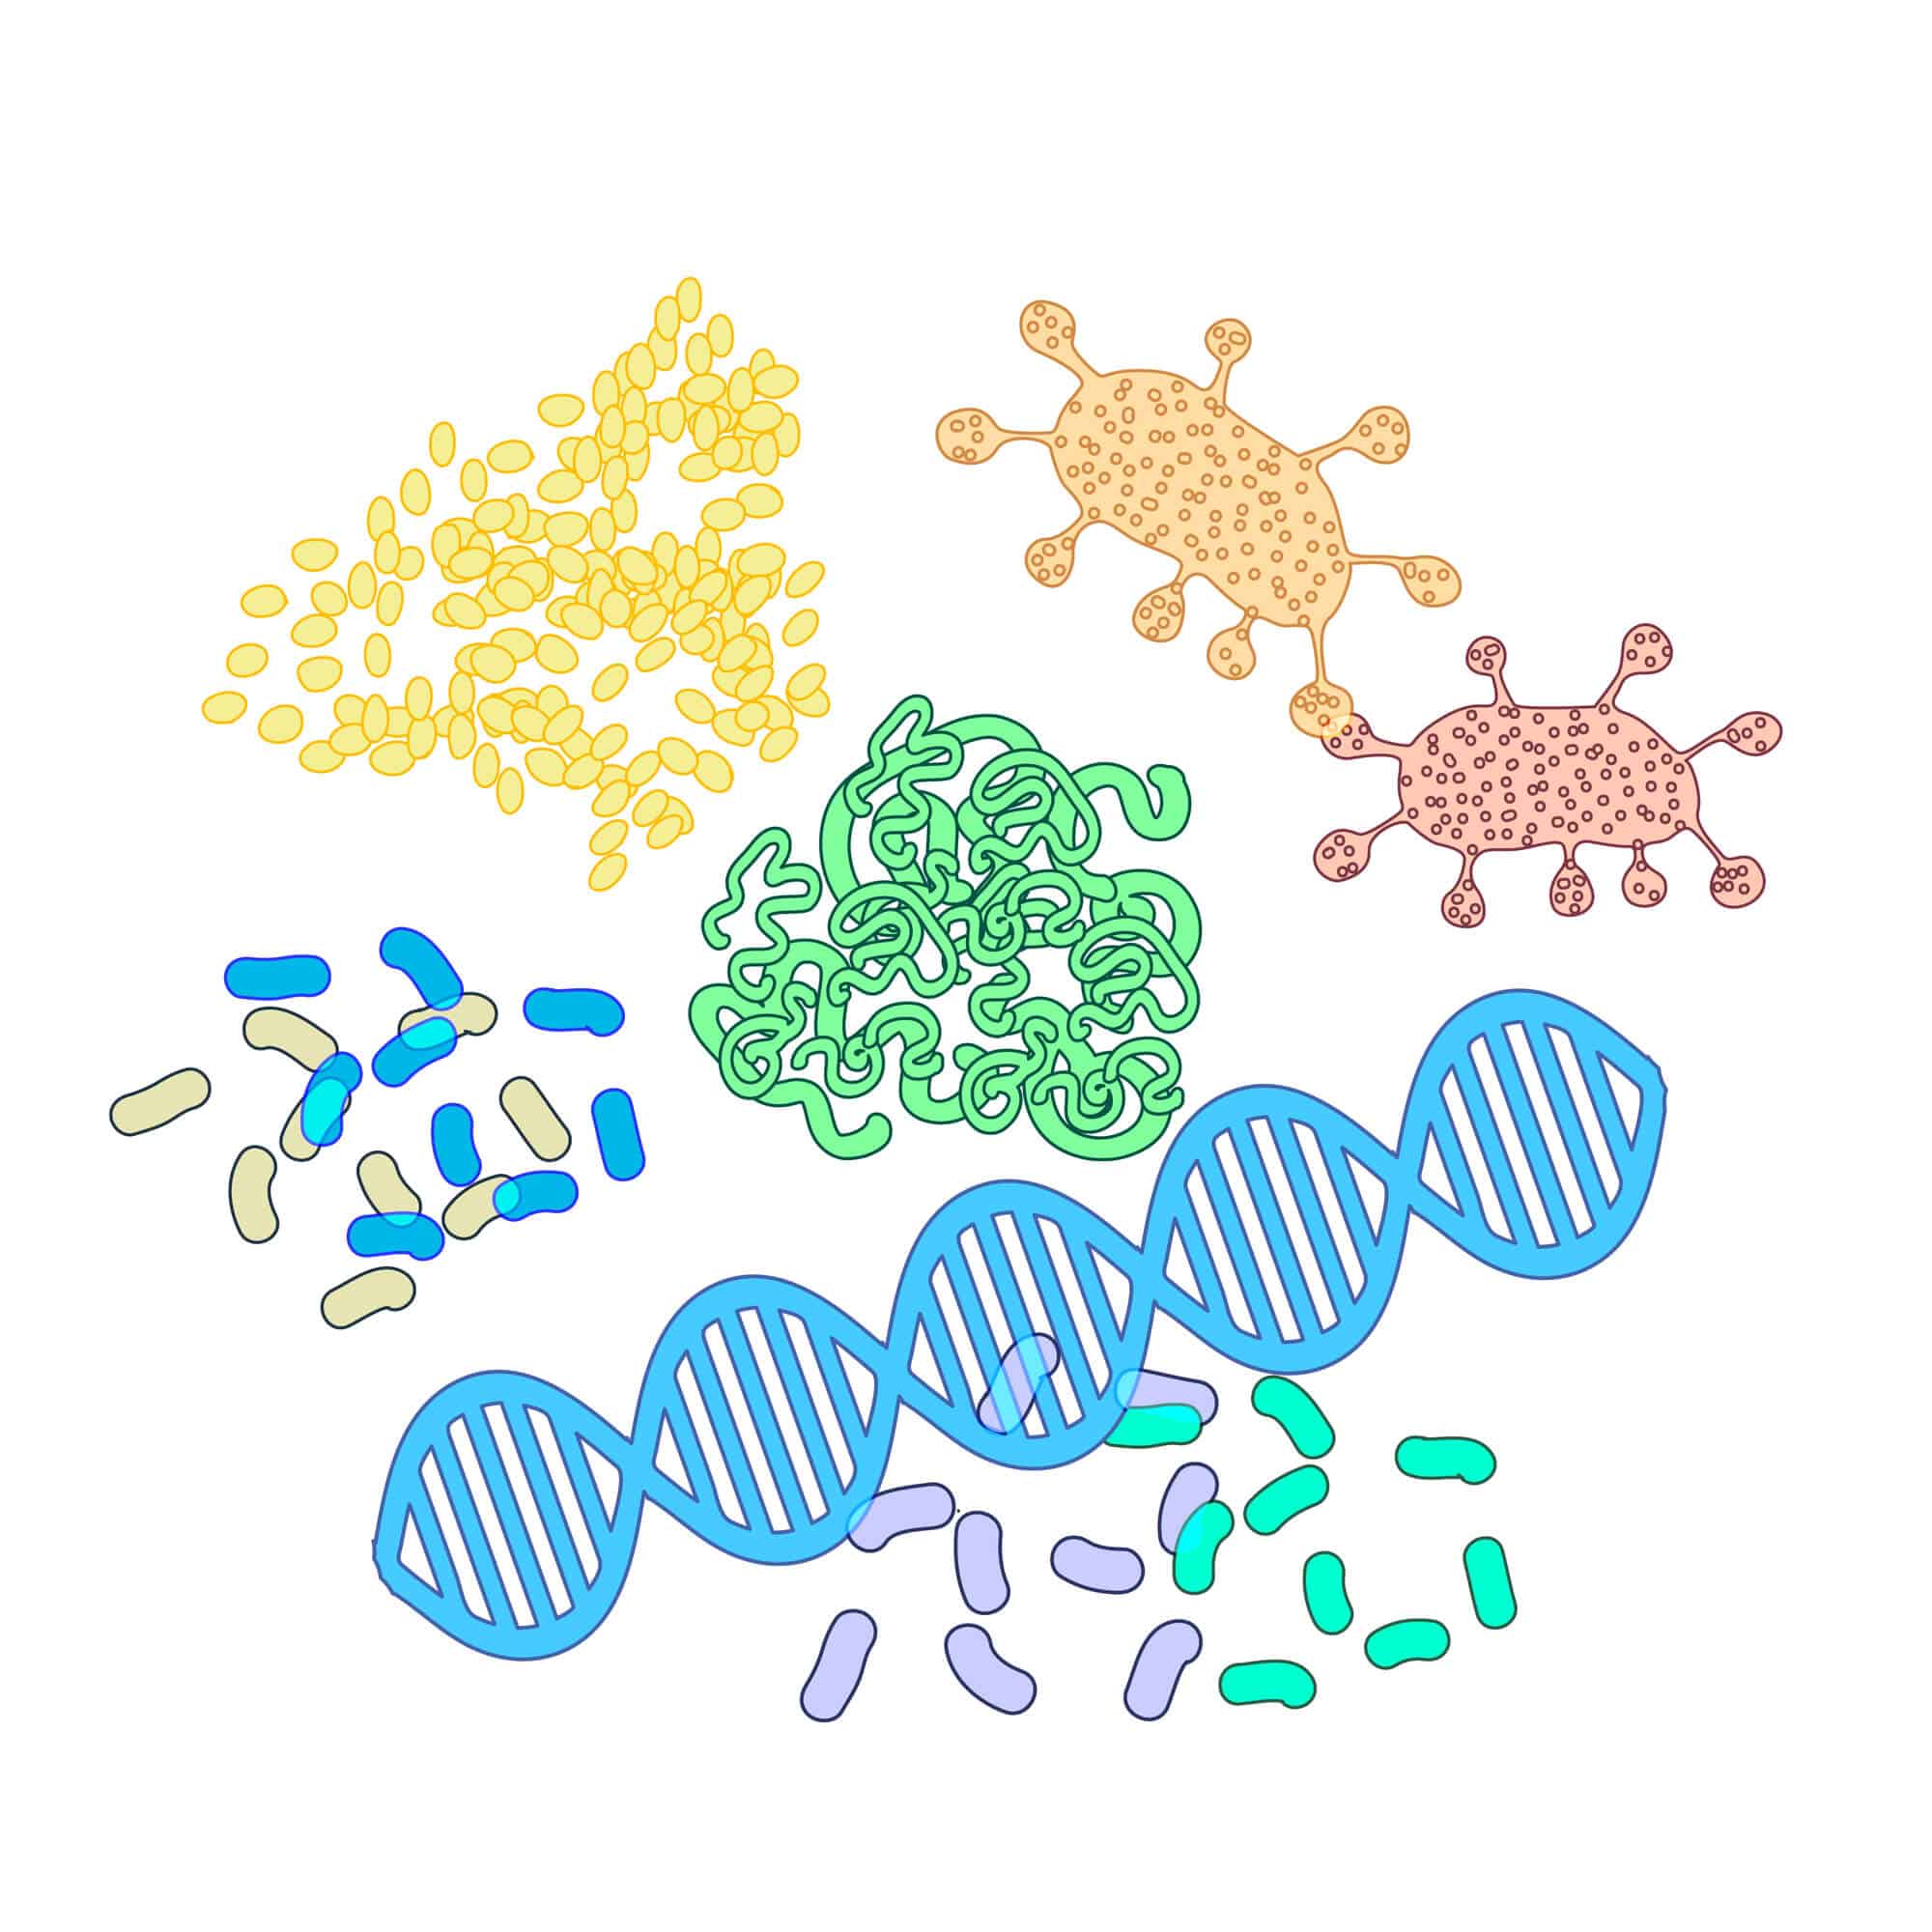 מבנים של חלבונים שונים.  <a href="https://depositphotos.com. ">המחשה: depositphotos.com</a>